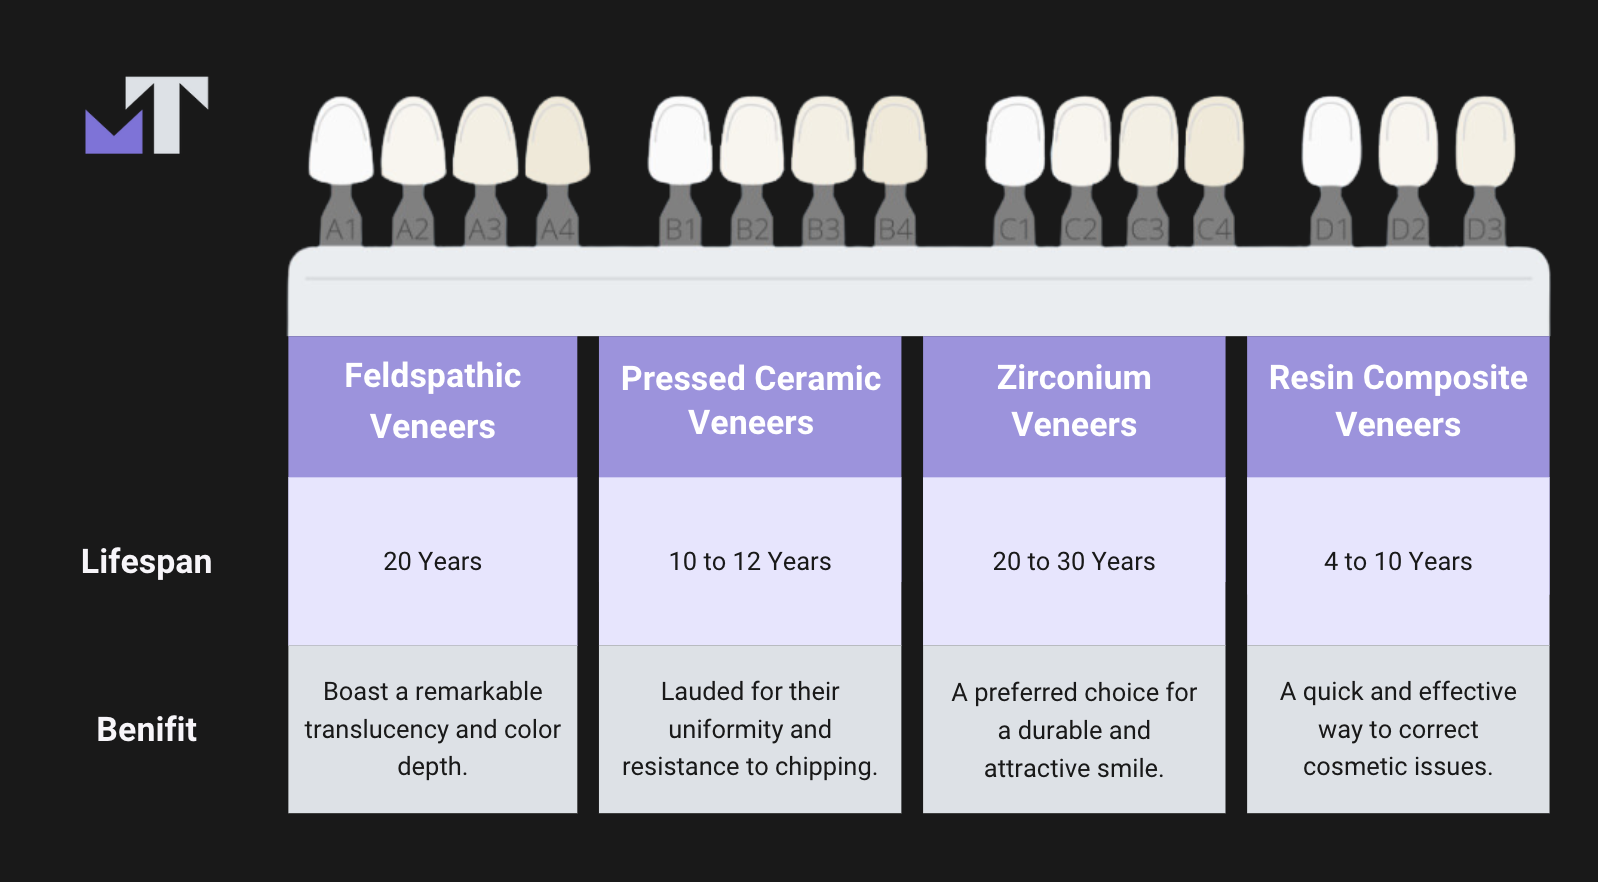 Diagram of veneer lifespan and benifits